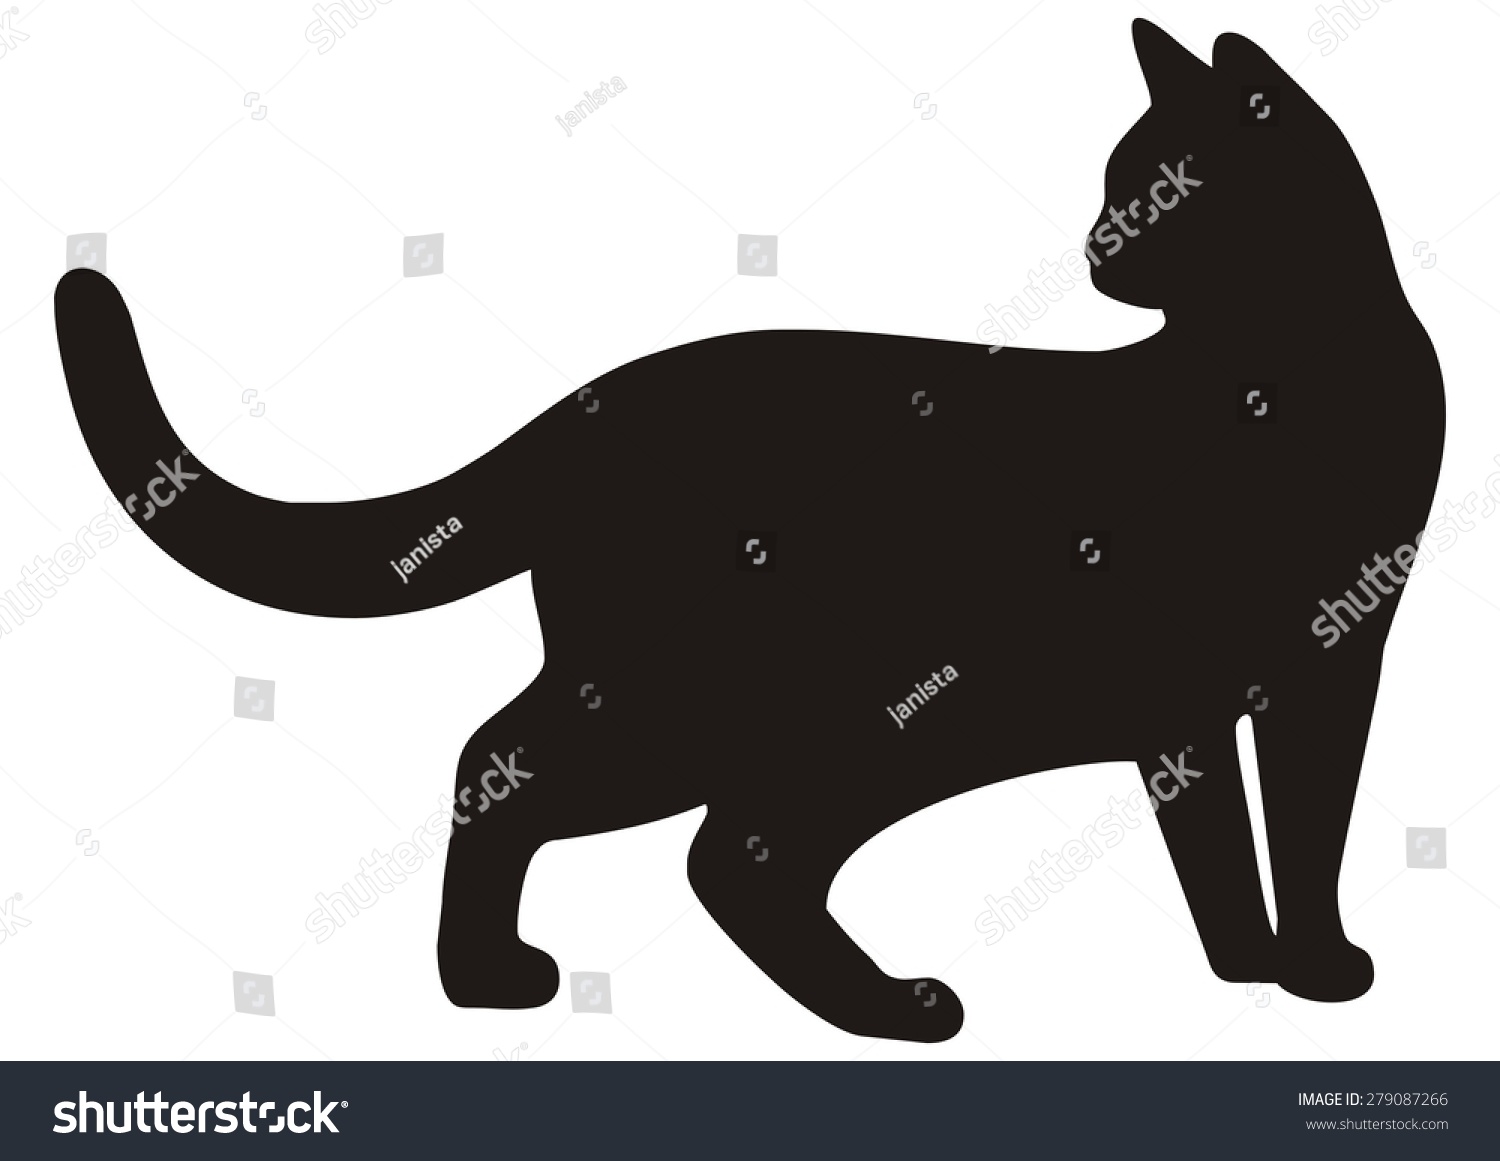 Cat, Black Silhouette, Vector Icon - 279087266 : Shutterstock